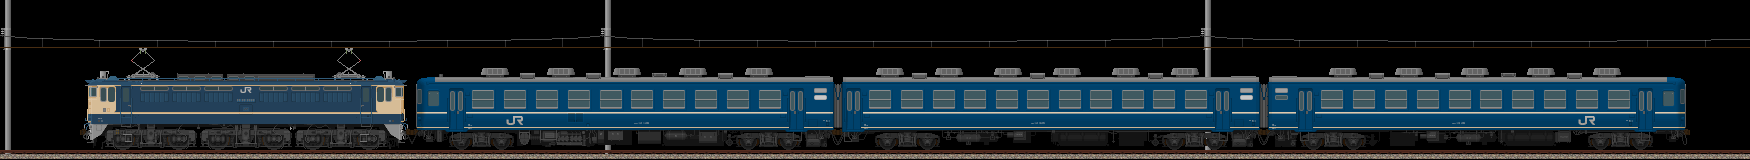 12系客車による臨時列車(2012/6/24更新)